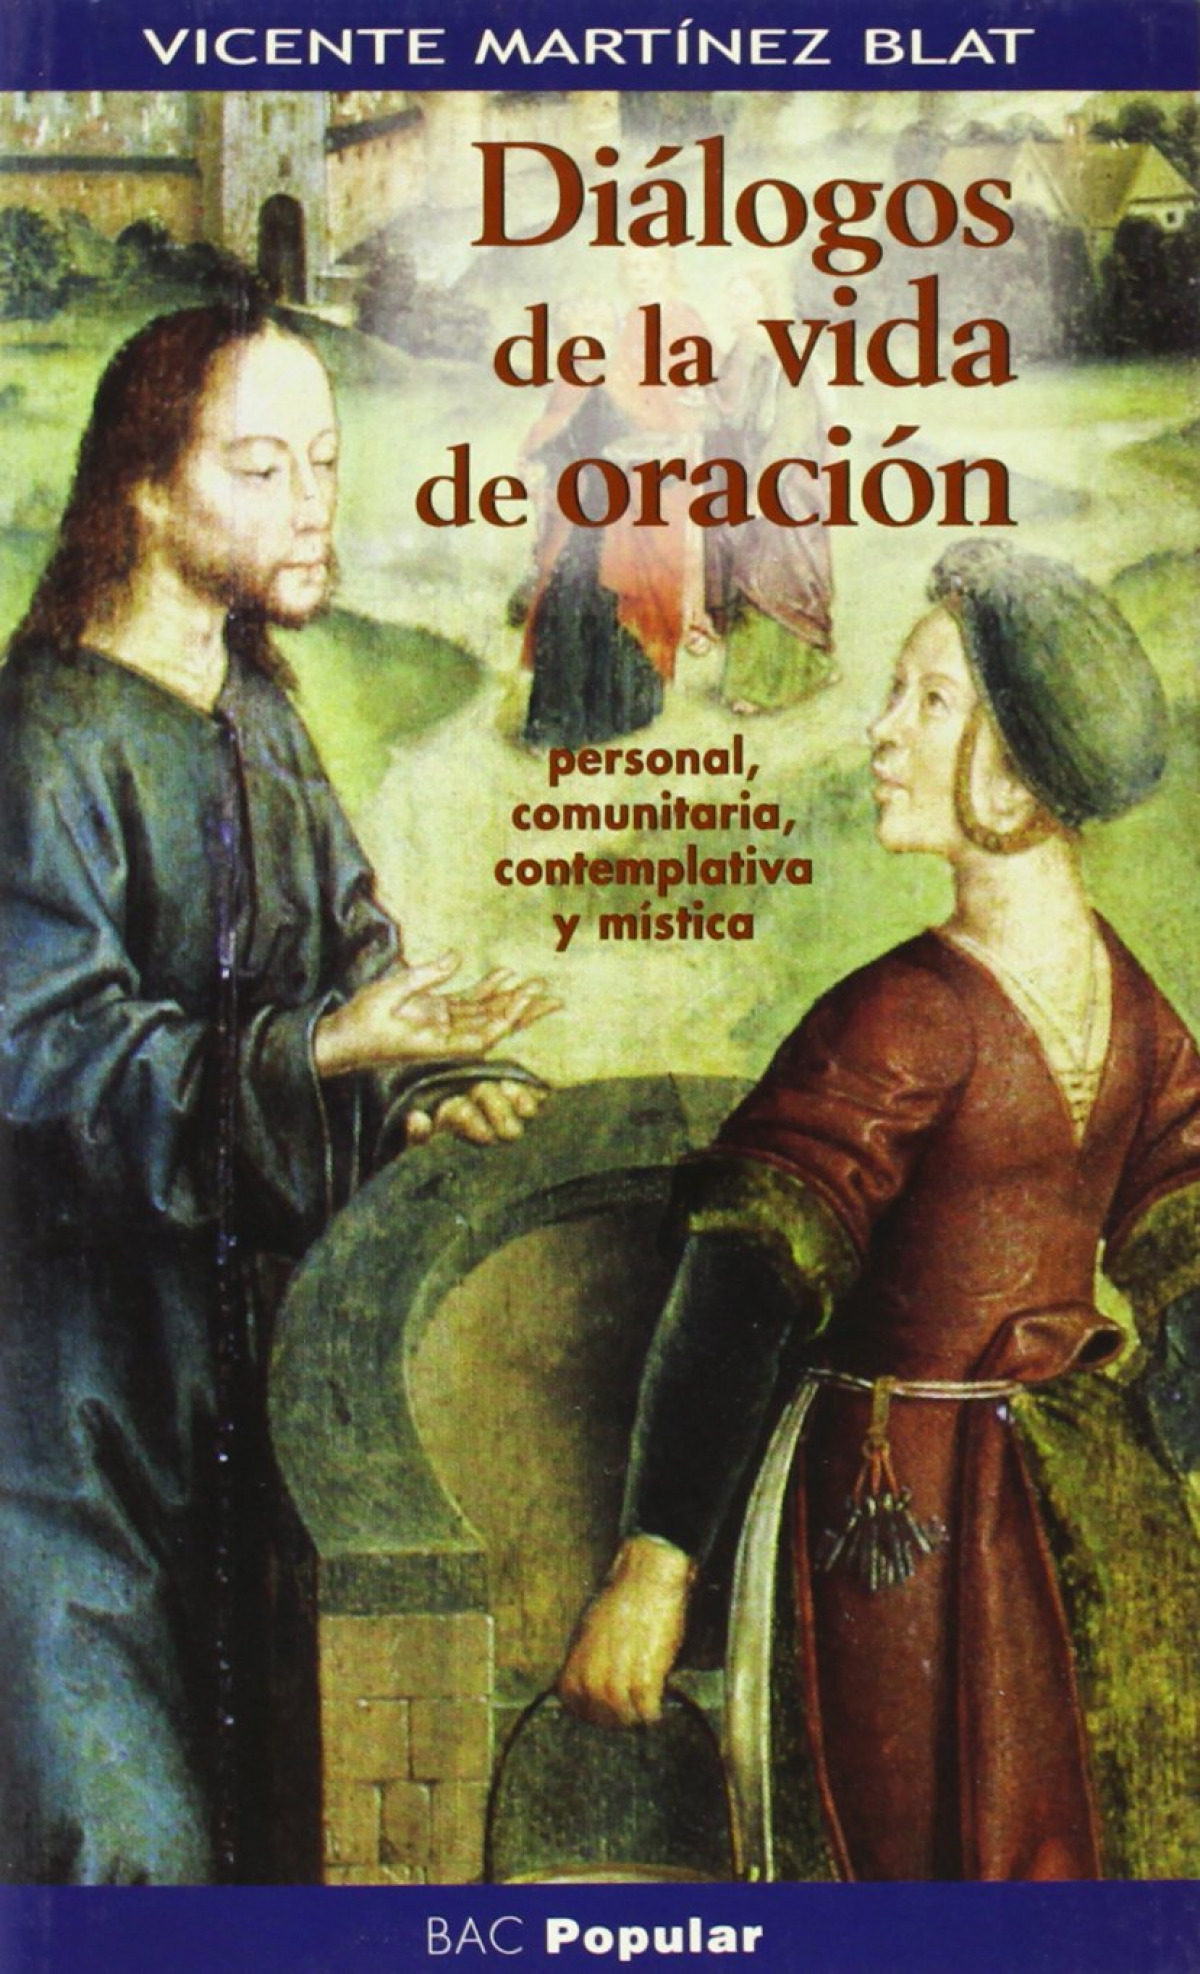 Diálogos de la vida de oración personla, comunitaria, contemplativa y mística - Martínez Blat, Vicente